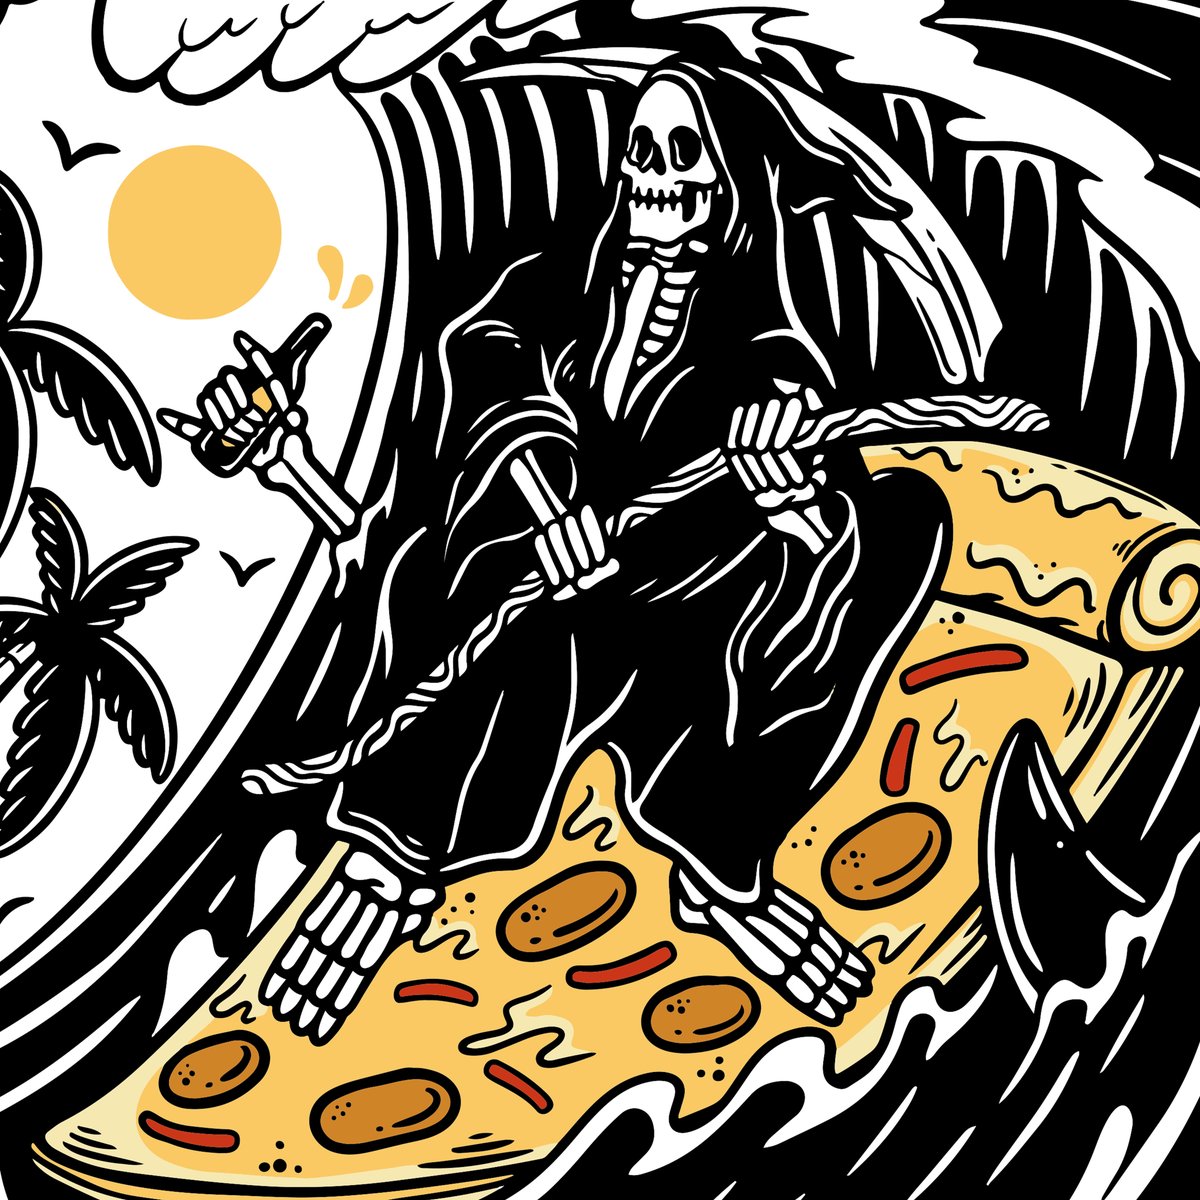 Pizza Surfing Death @deathandfriends.ltd

#deathnfriends #deathandfriends #deathnfriendsskull #deathandblues #pizzadeath #deathbypizza #eatfast #livefastdieyoung #livefast #uksurfing #tattoos #pizzalover #deathbypizza #pizzaofdeath #pietillidie #balisurfing  #workhardplayharder